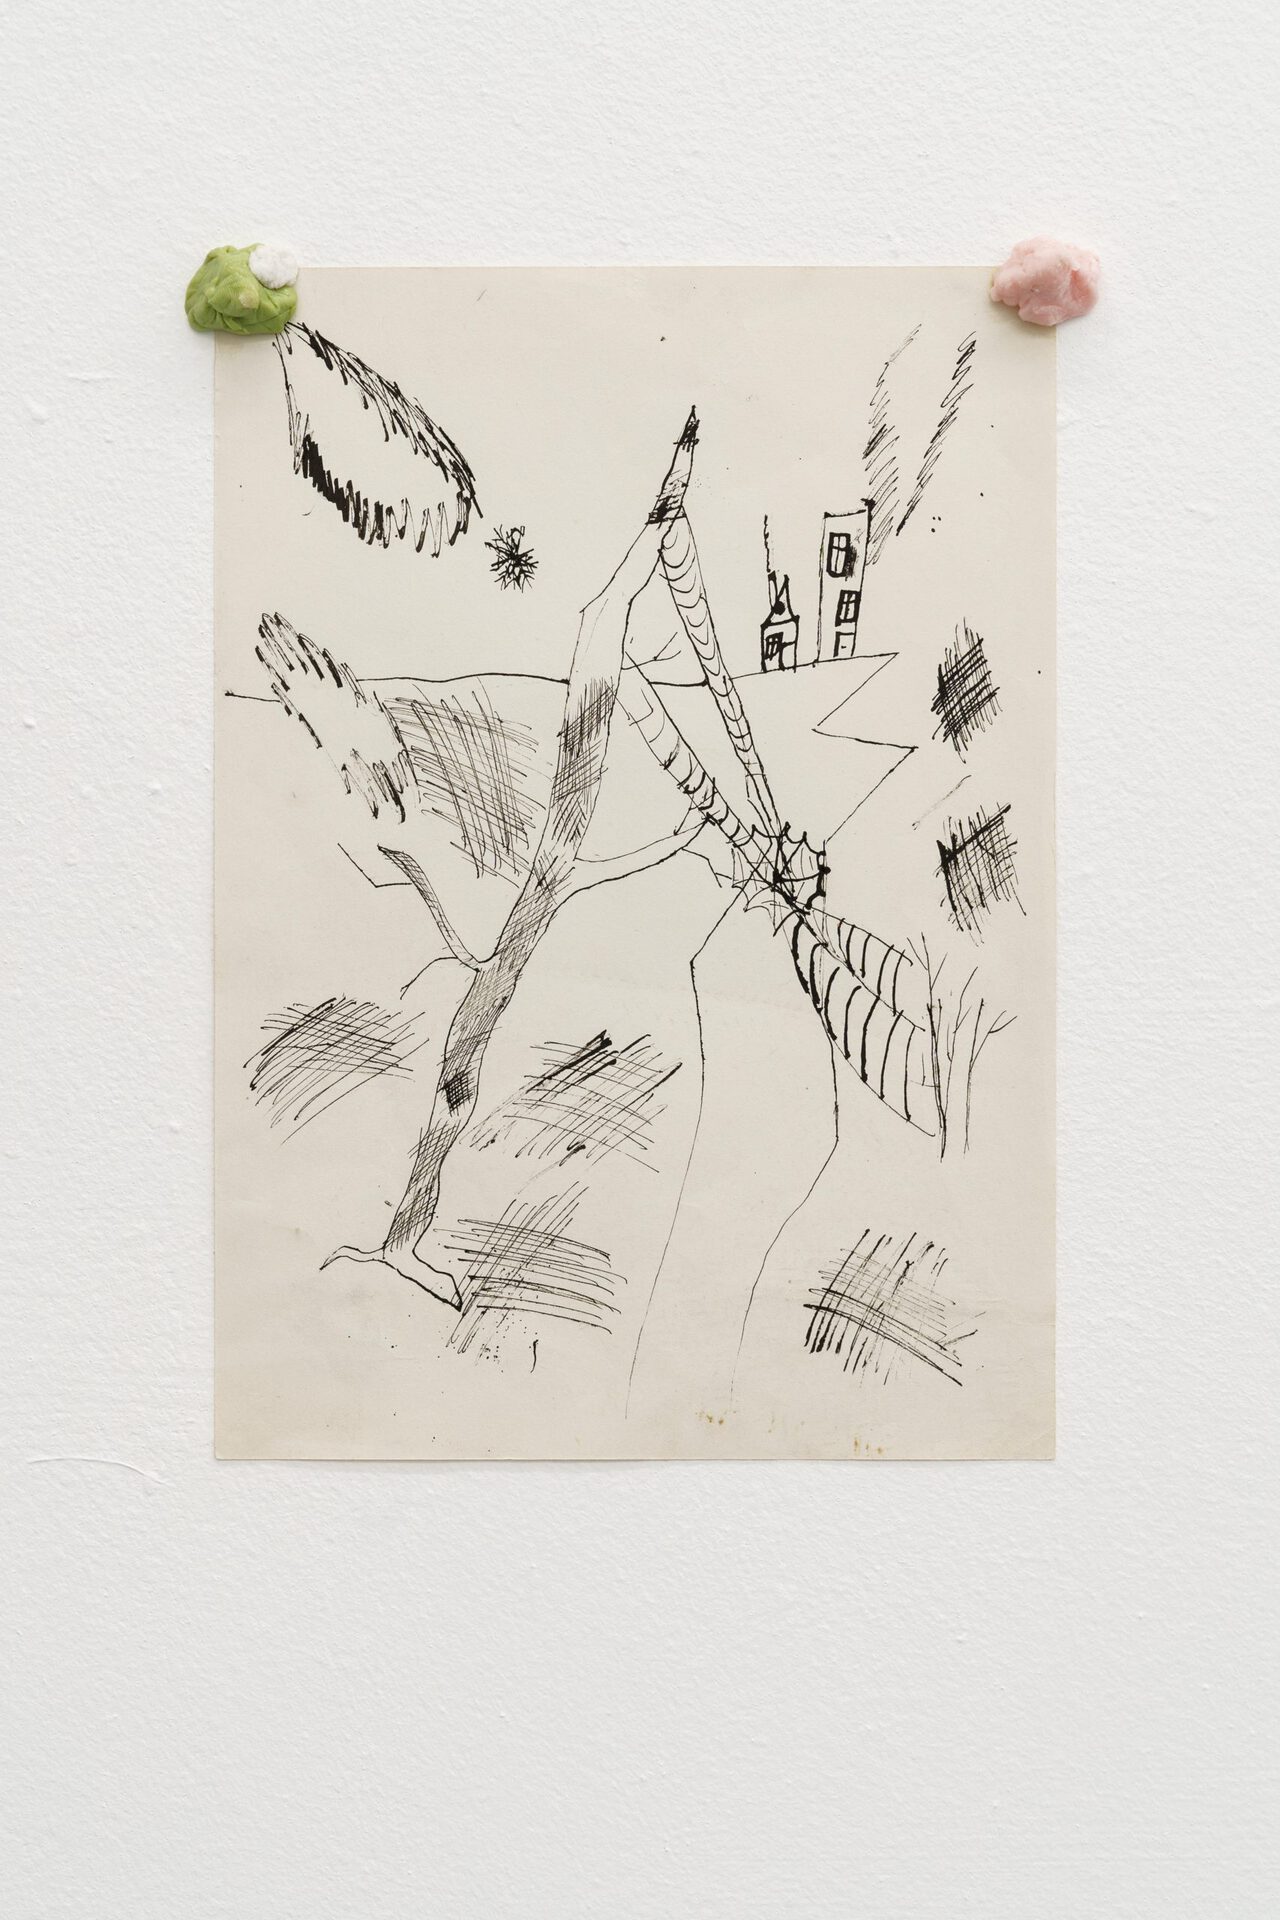 Vanya Venmer, ‘Untitled’, 1999, pen on paper, bubble gum, 19x27 cm